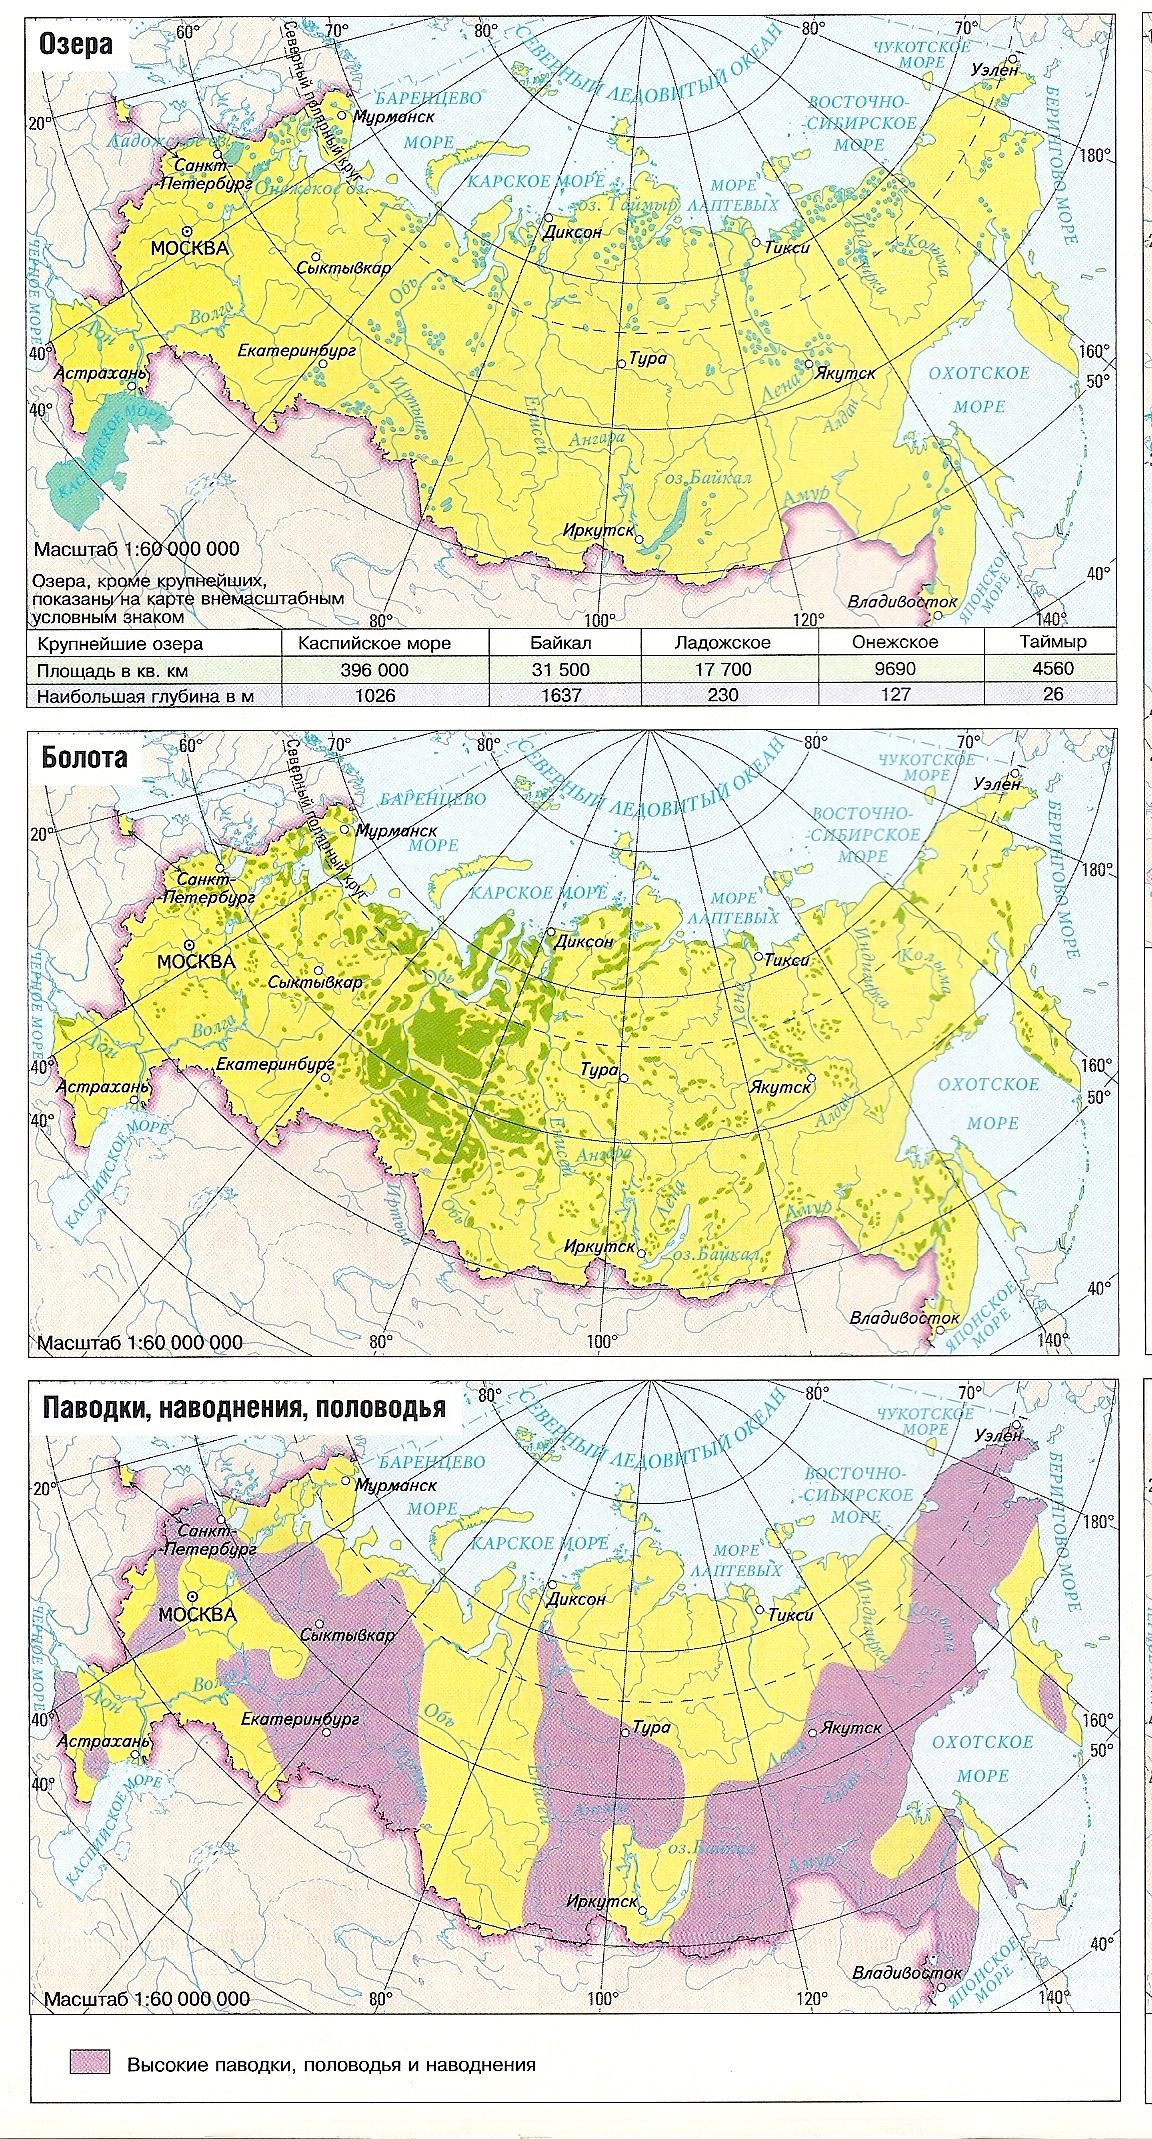 Практическая работа в контурной карте по теме: « Внутренние воды России »